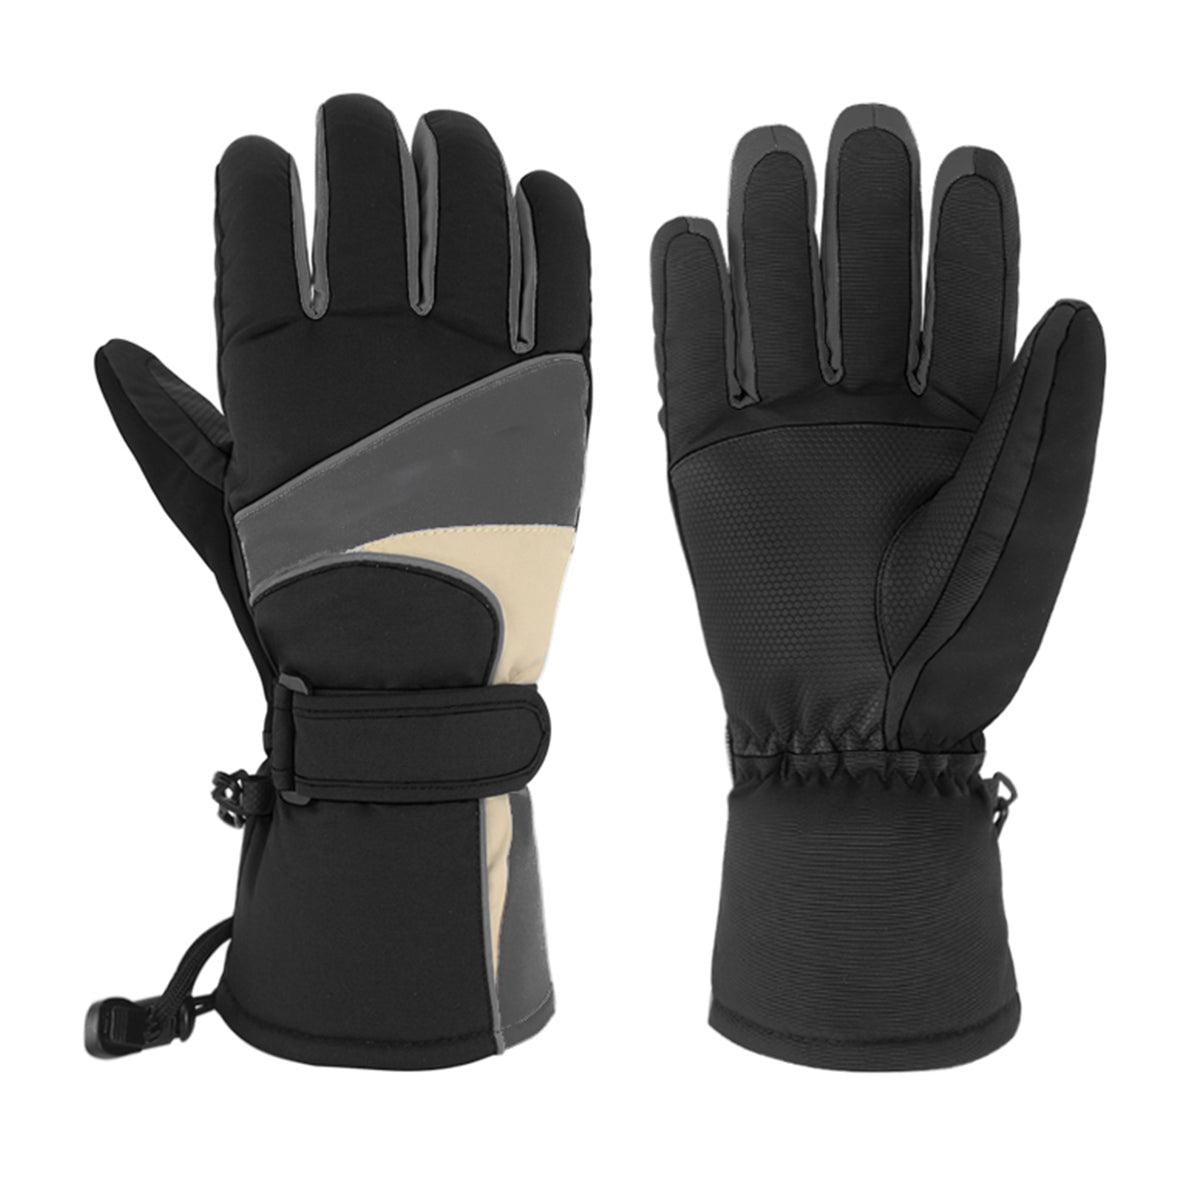 Dark Slate Gray Electric Heated Gloves Motorcycle Winter Waterproof Thermal Outdoor Skiing Warmer